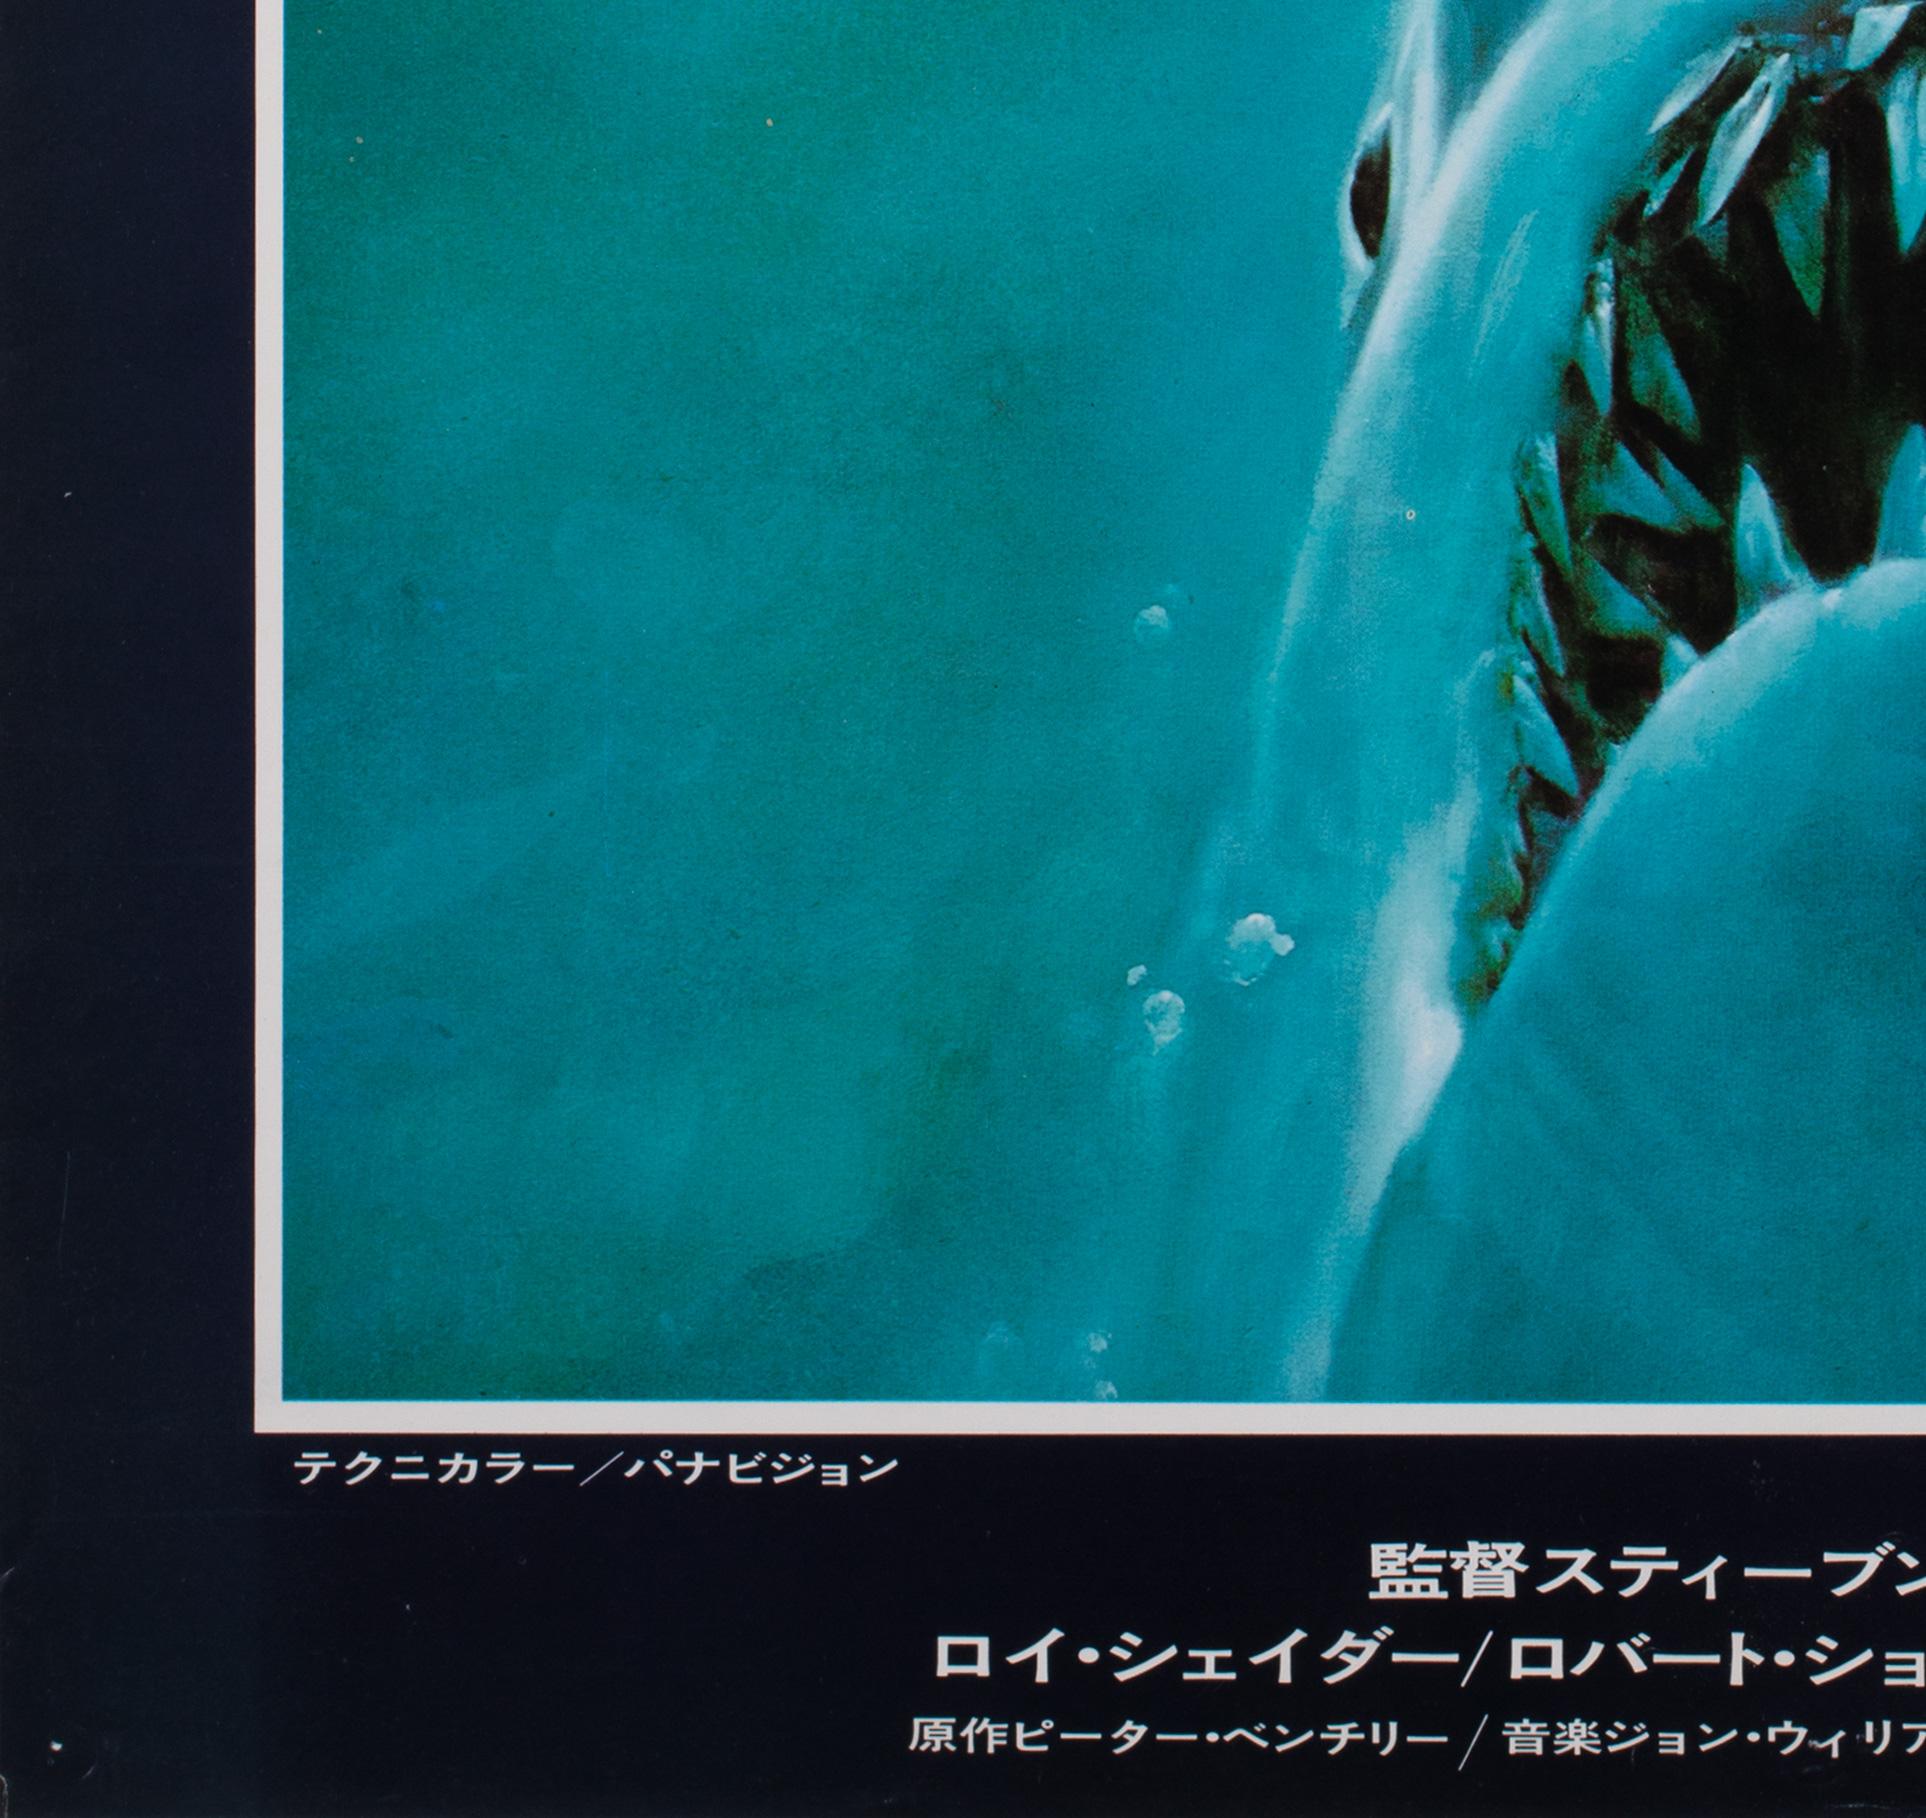 Paper Jaws 1975 Original Vintage Japanese B2 Film Poster, Kastel, Blue, Red, Shark